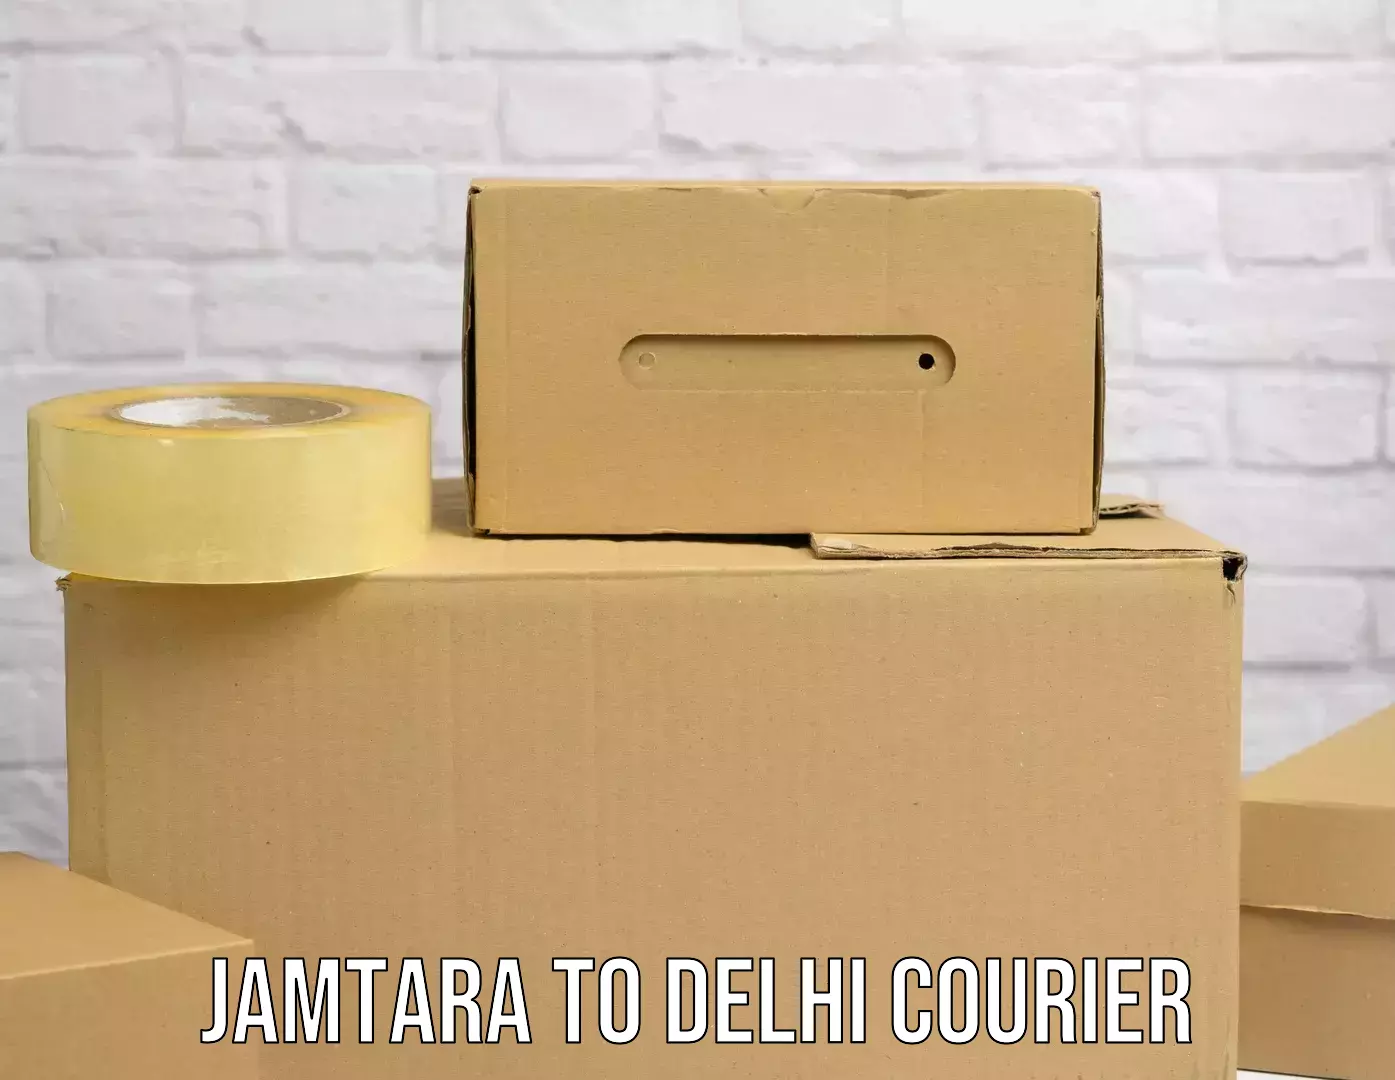 Express logistics service Jamtara to NCR